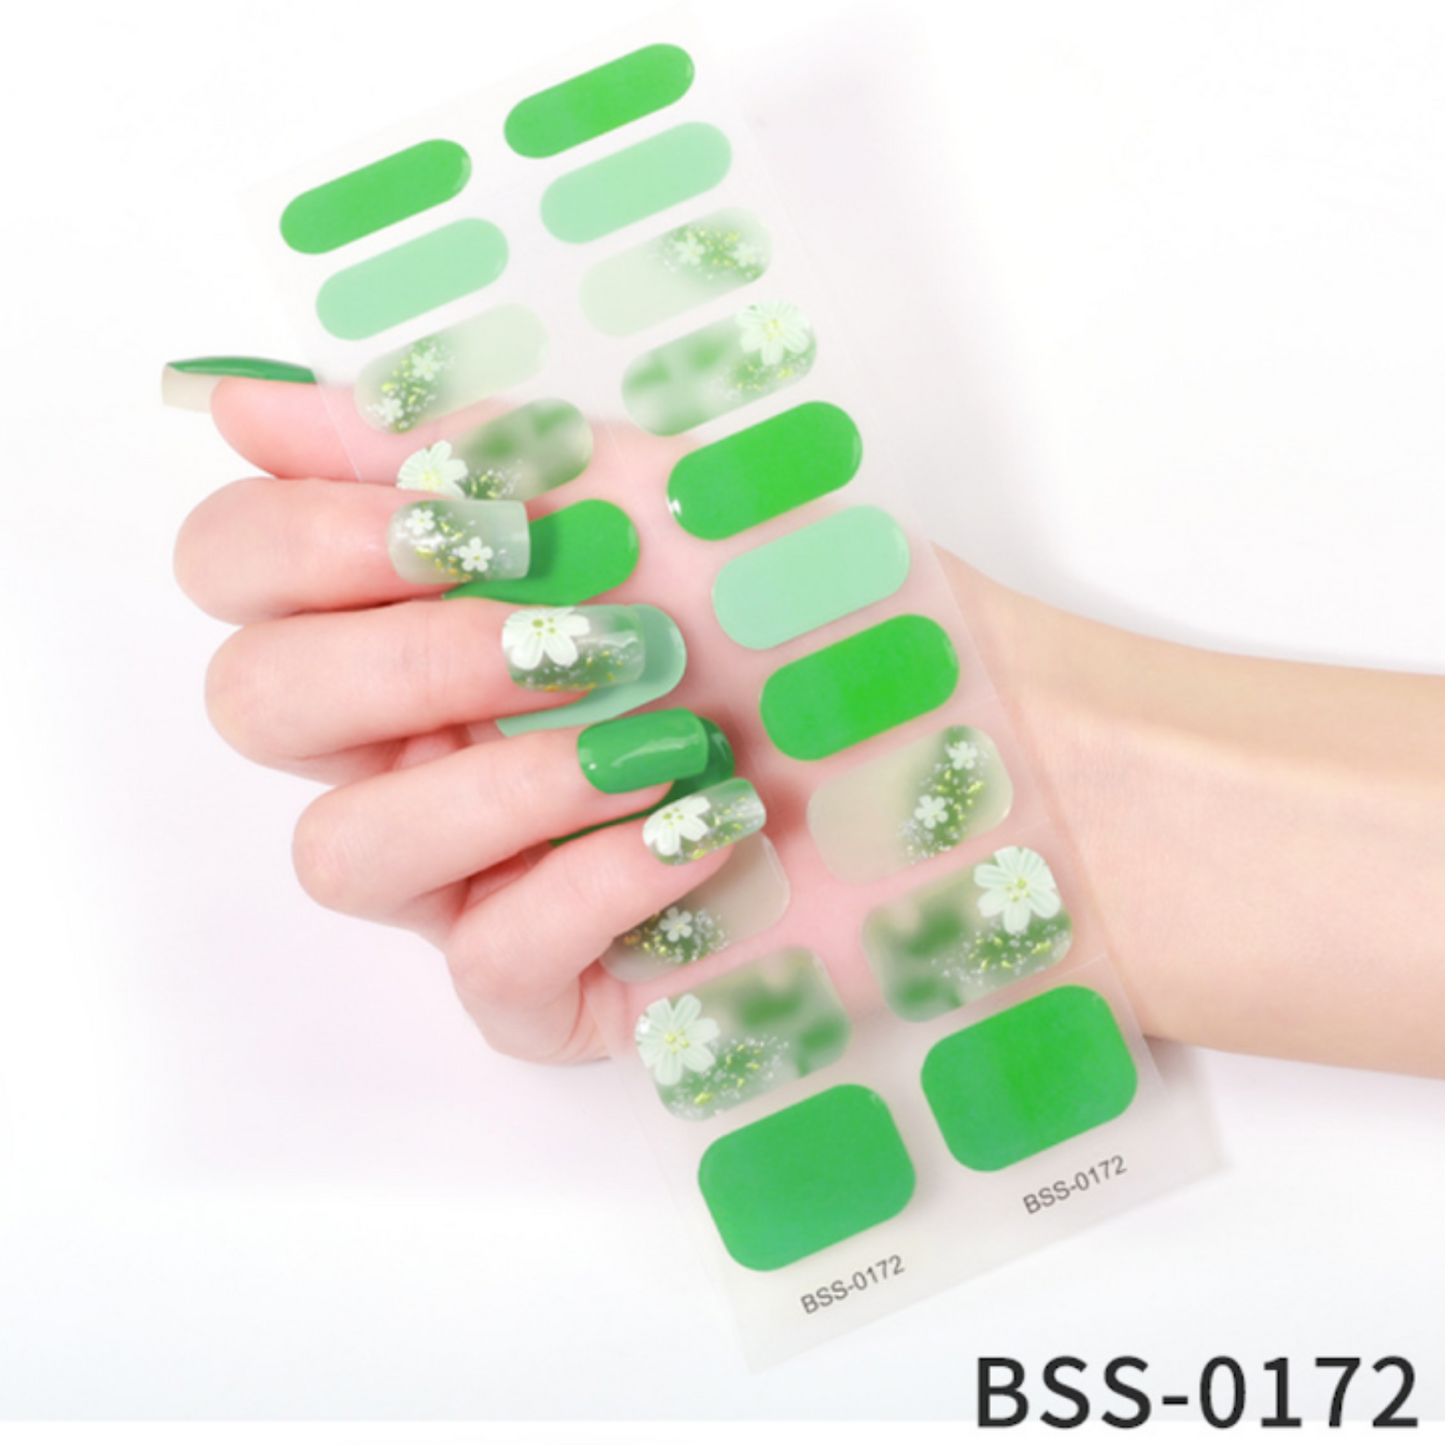 20 PCS Semi-Cured Gel Nail Wraps | BSS 0172